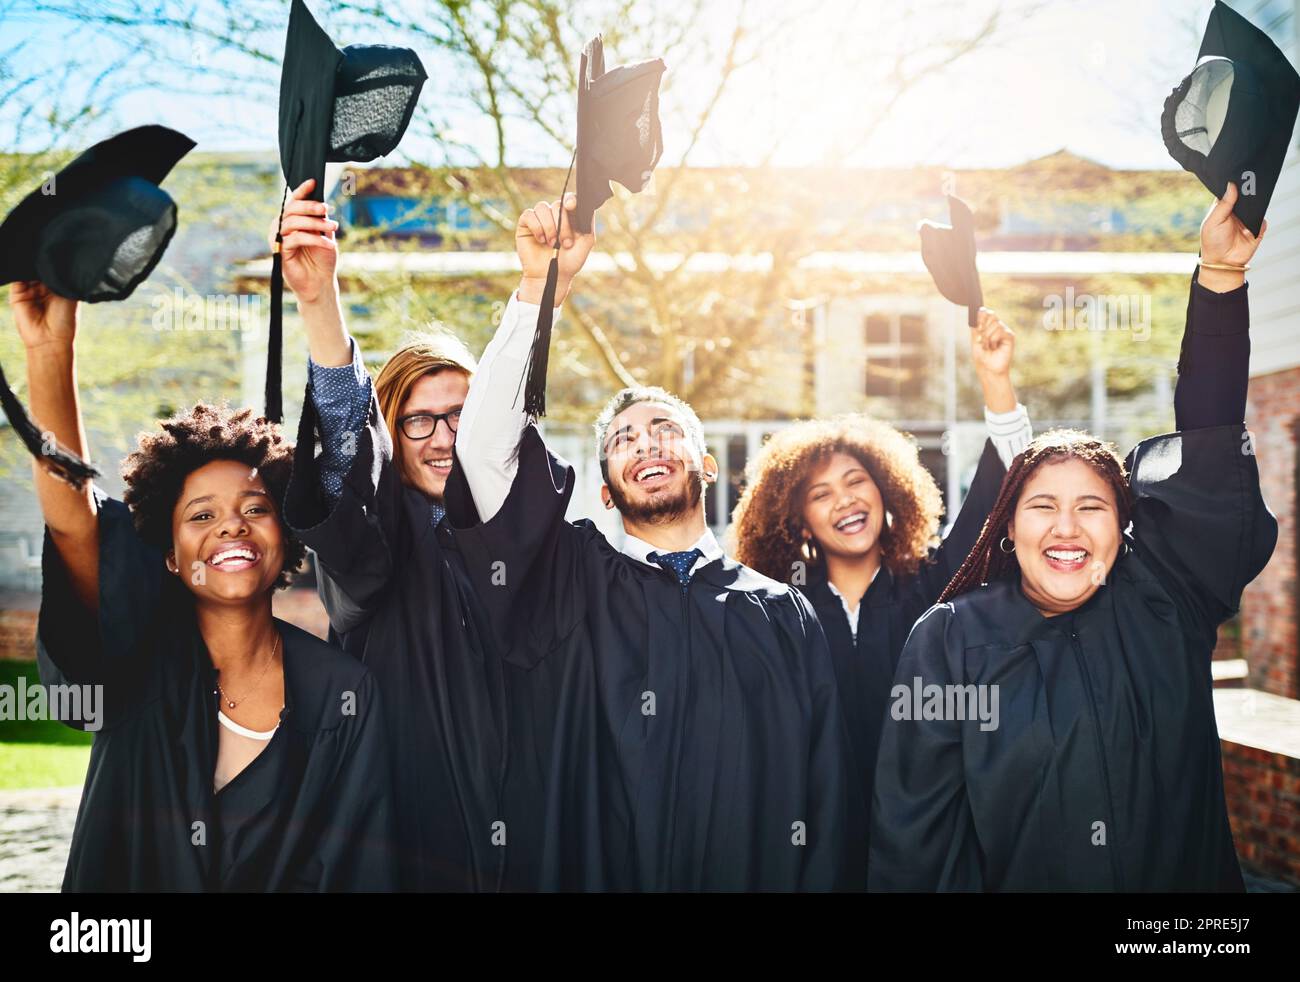 Waren bereit, die Zukunft zu übernehmen. Eine Gruppe von Studenten warf ihre Mützen in die Luft nach dem Studium. Stockfoto